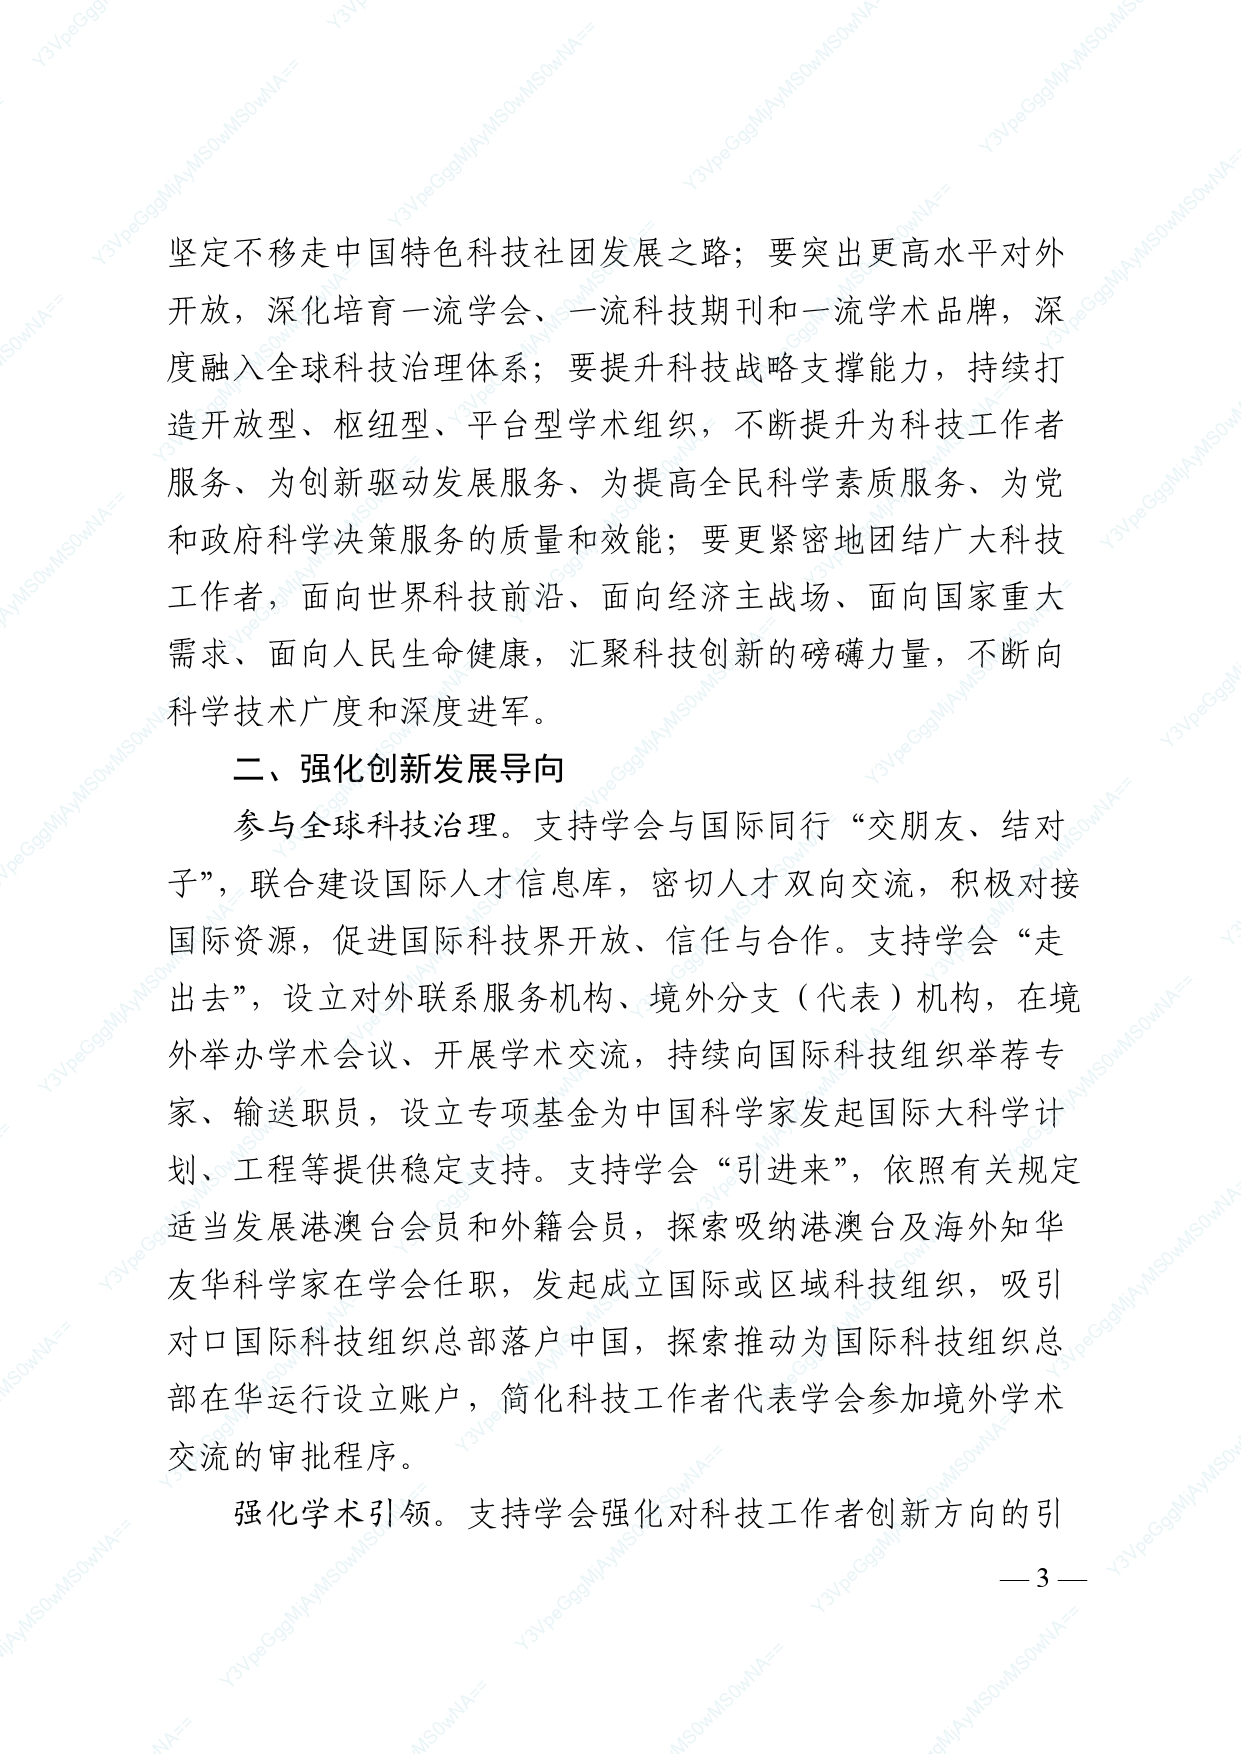 中国科协 民政部印发《关于进一步推动中国科协学会创新发展的意见》的通知_page-0003.jpg